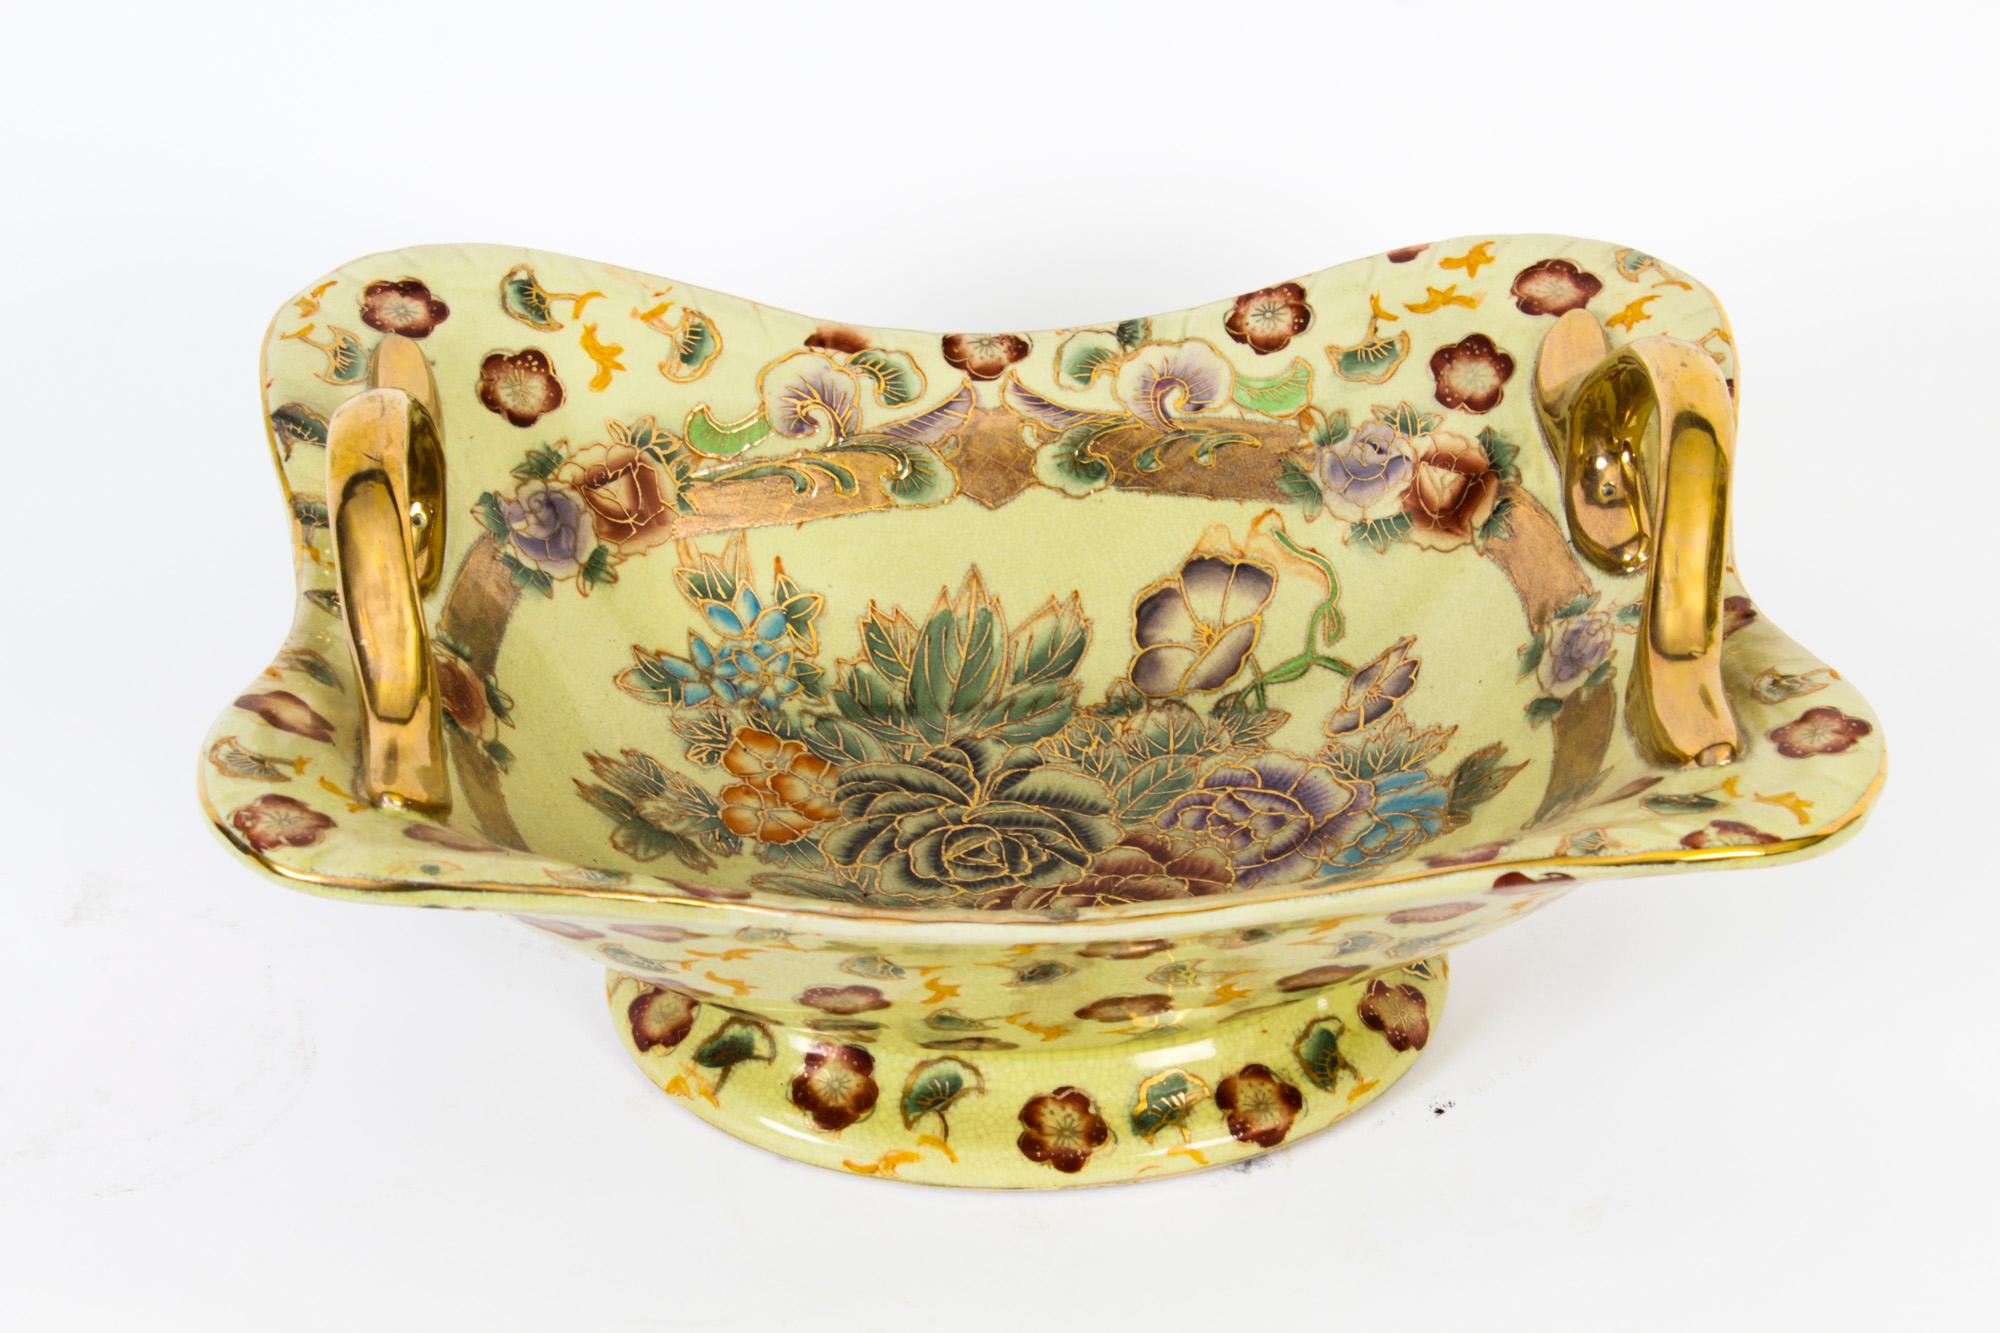 Il s'agit d'un joli bol en porcelaine, datant du milieu du 20e siècle.
 
Le bol ovale est doté d'une paire d'anses dorées et est magnifiquement peint d'un fond crème et de roses aux couleurs vives avec des reflets dorés.
 
Ajoutez ce magnifique